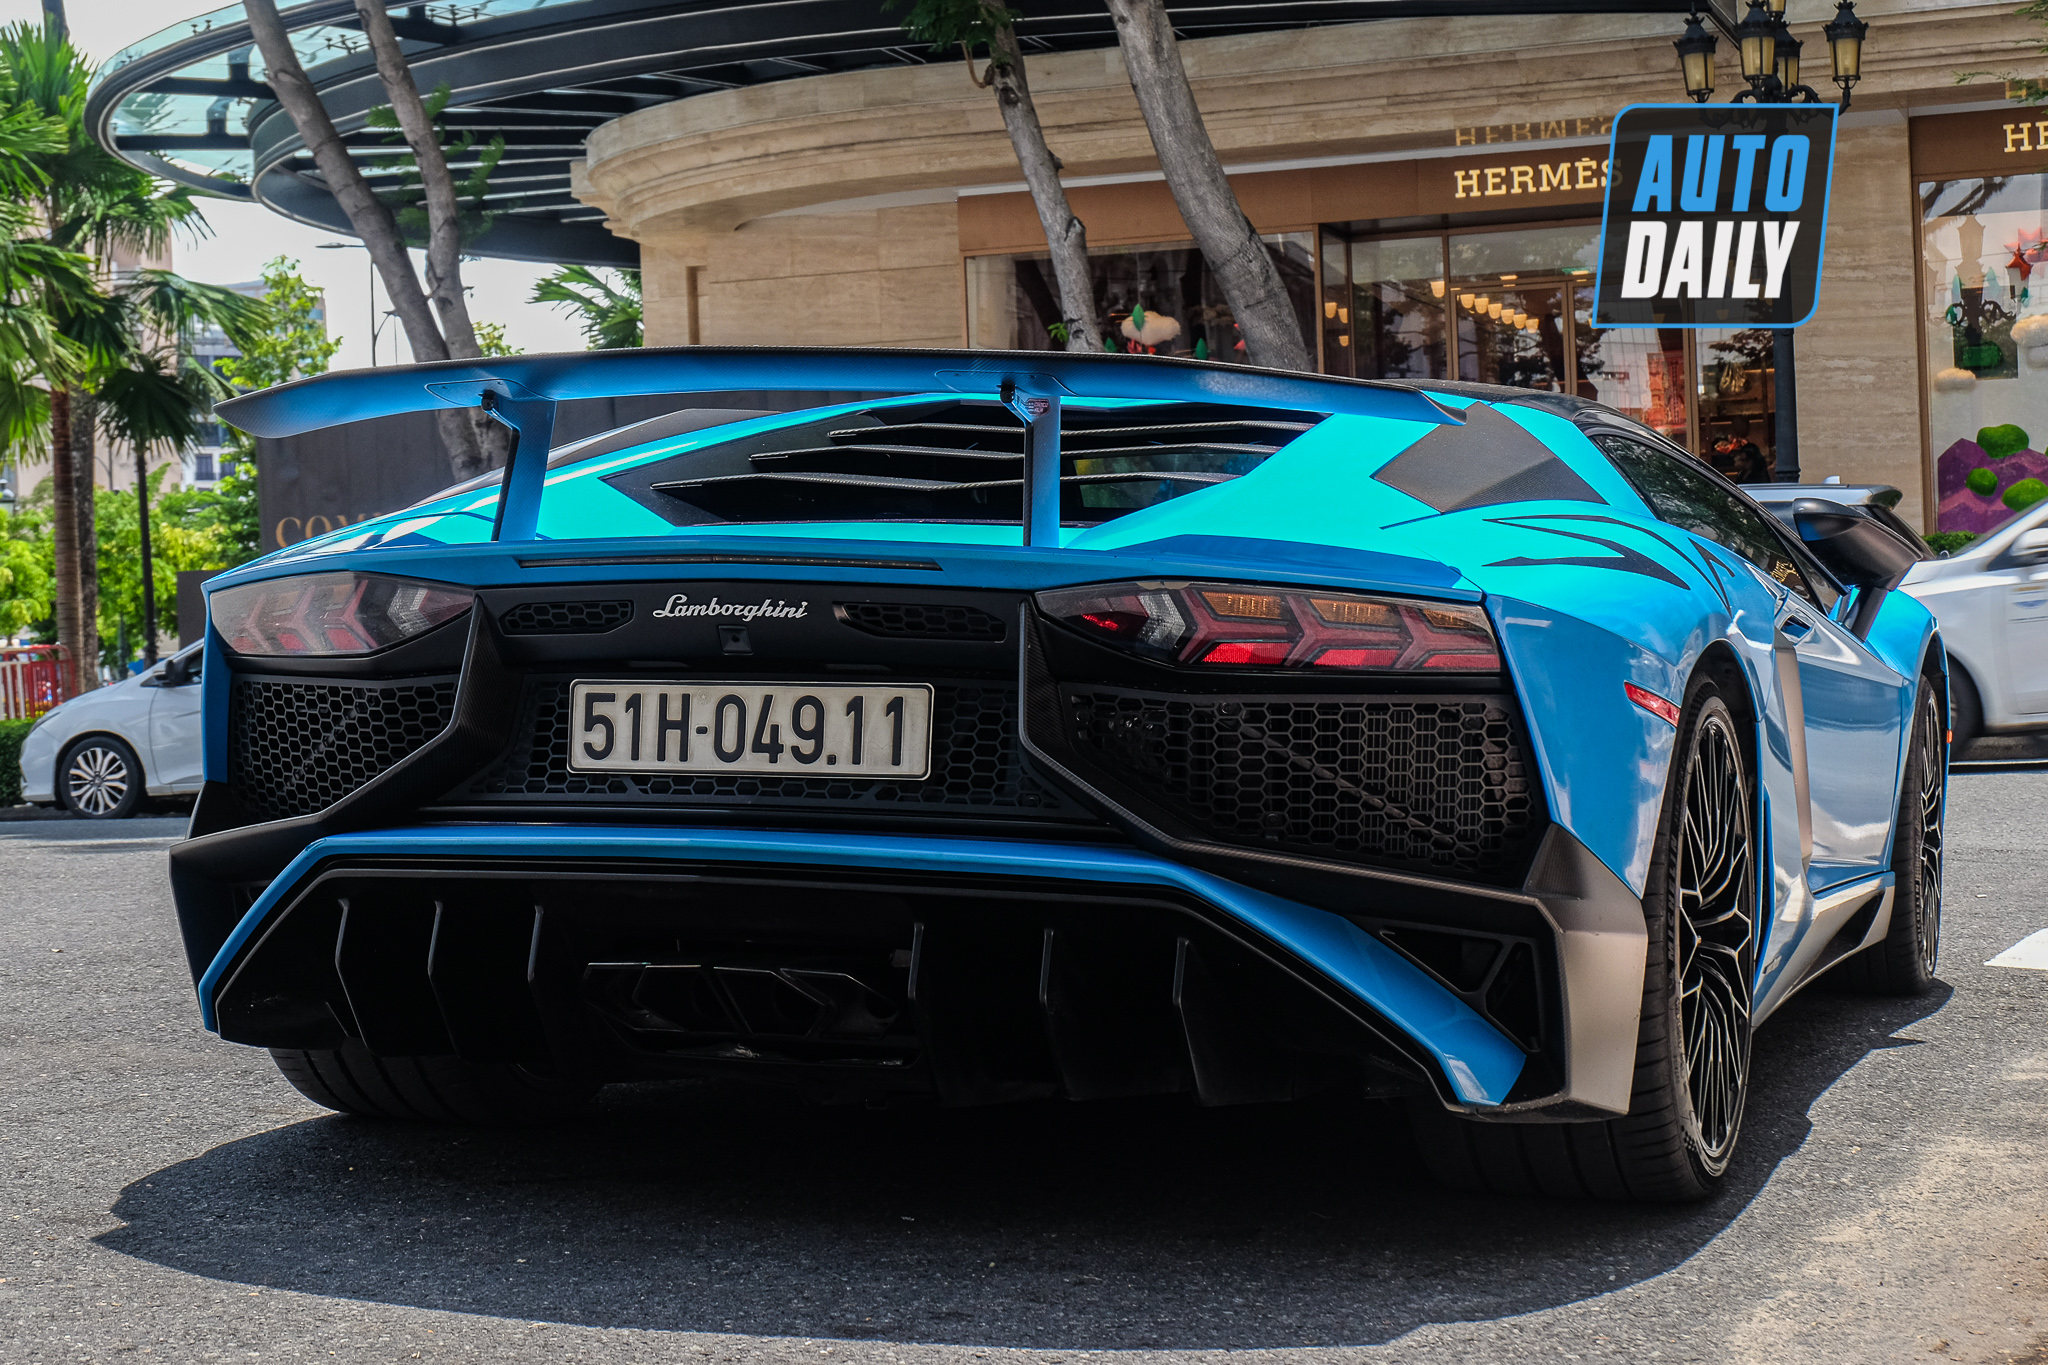 Lamborghini Aventador SV hơn 35 tỷ đầu tiên về Việt Nam tái xuất trên phố lamborghini-aventador-sv-dau-tien-viet-nam-autodaily-8.JPG